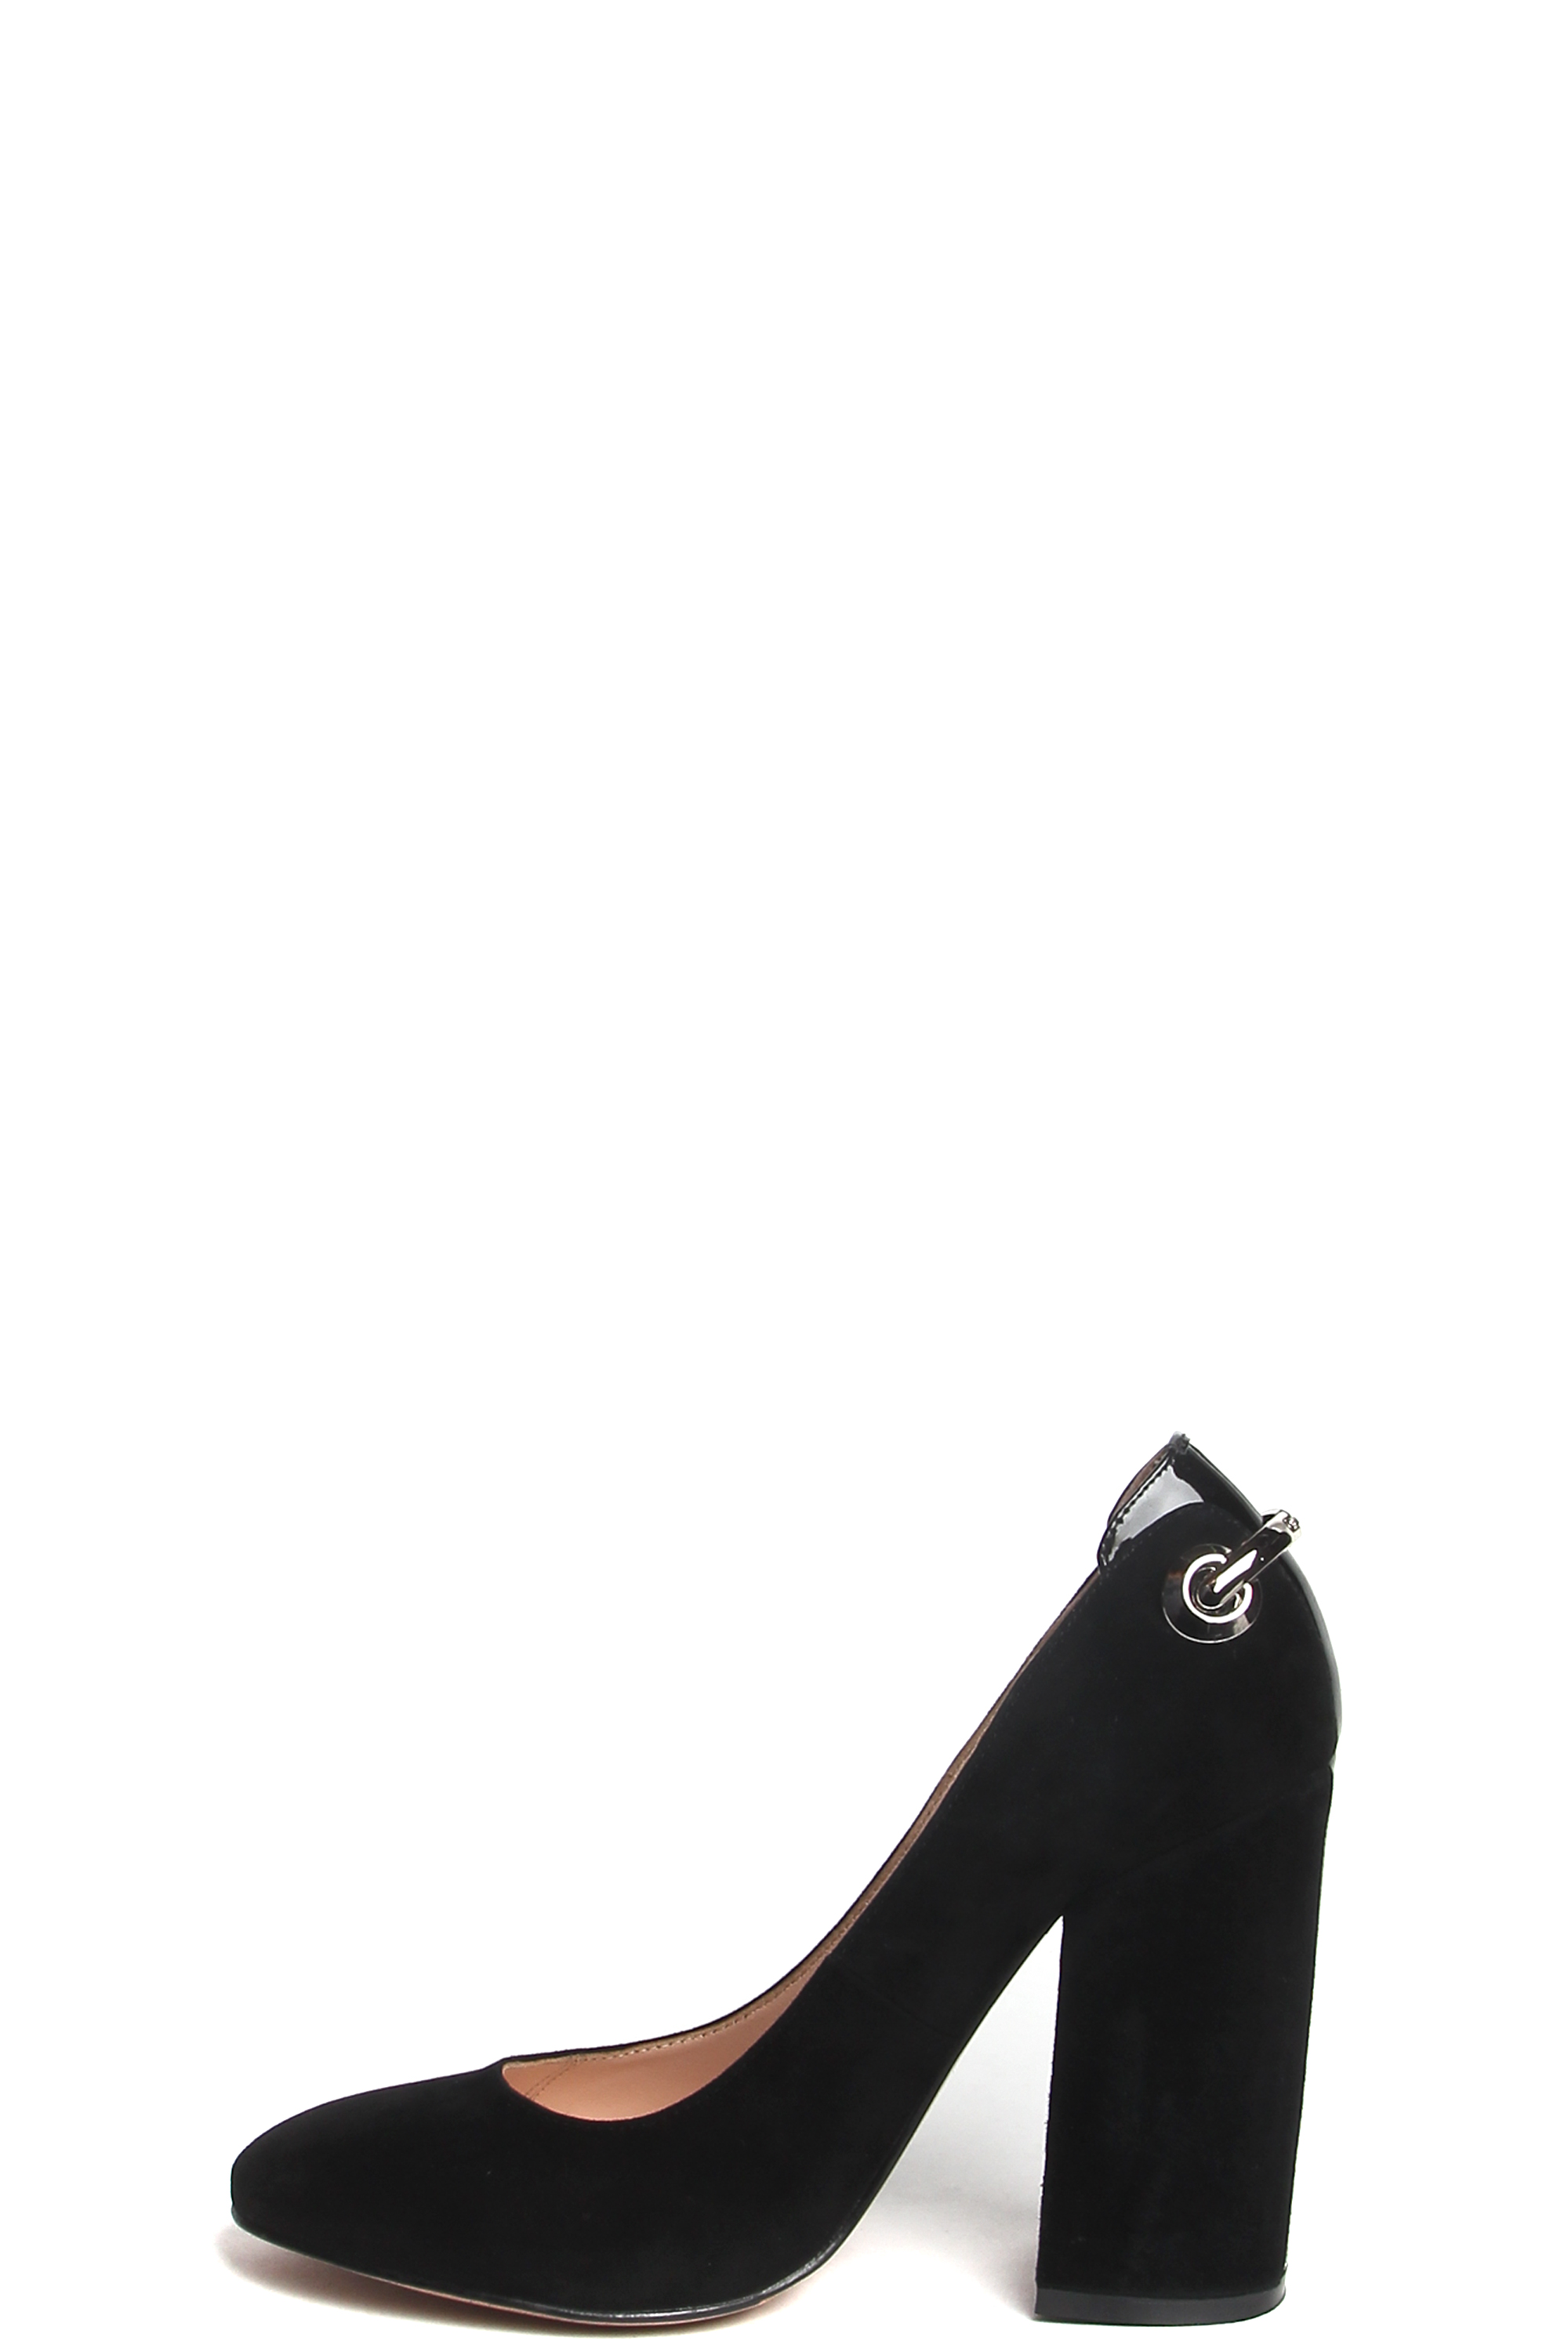 Туфли MILANA 181004-1-2101 черный - купить 8490